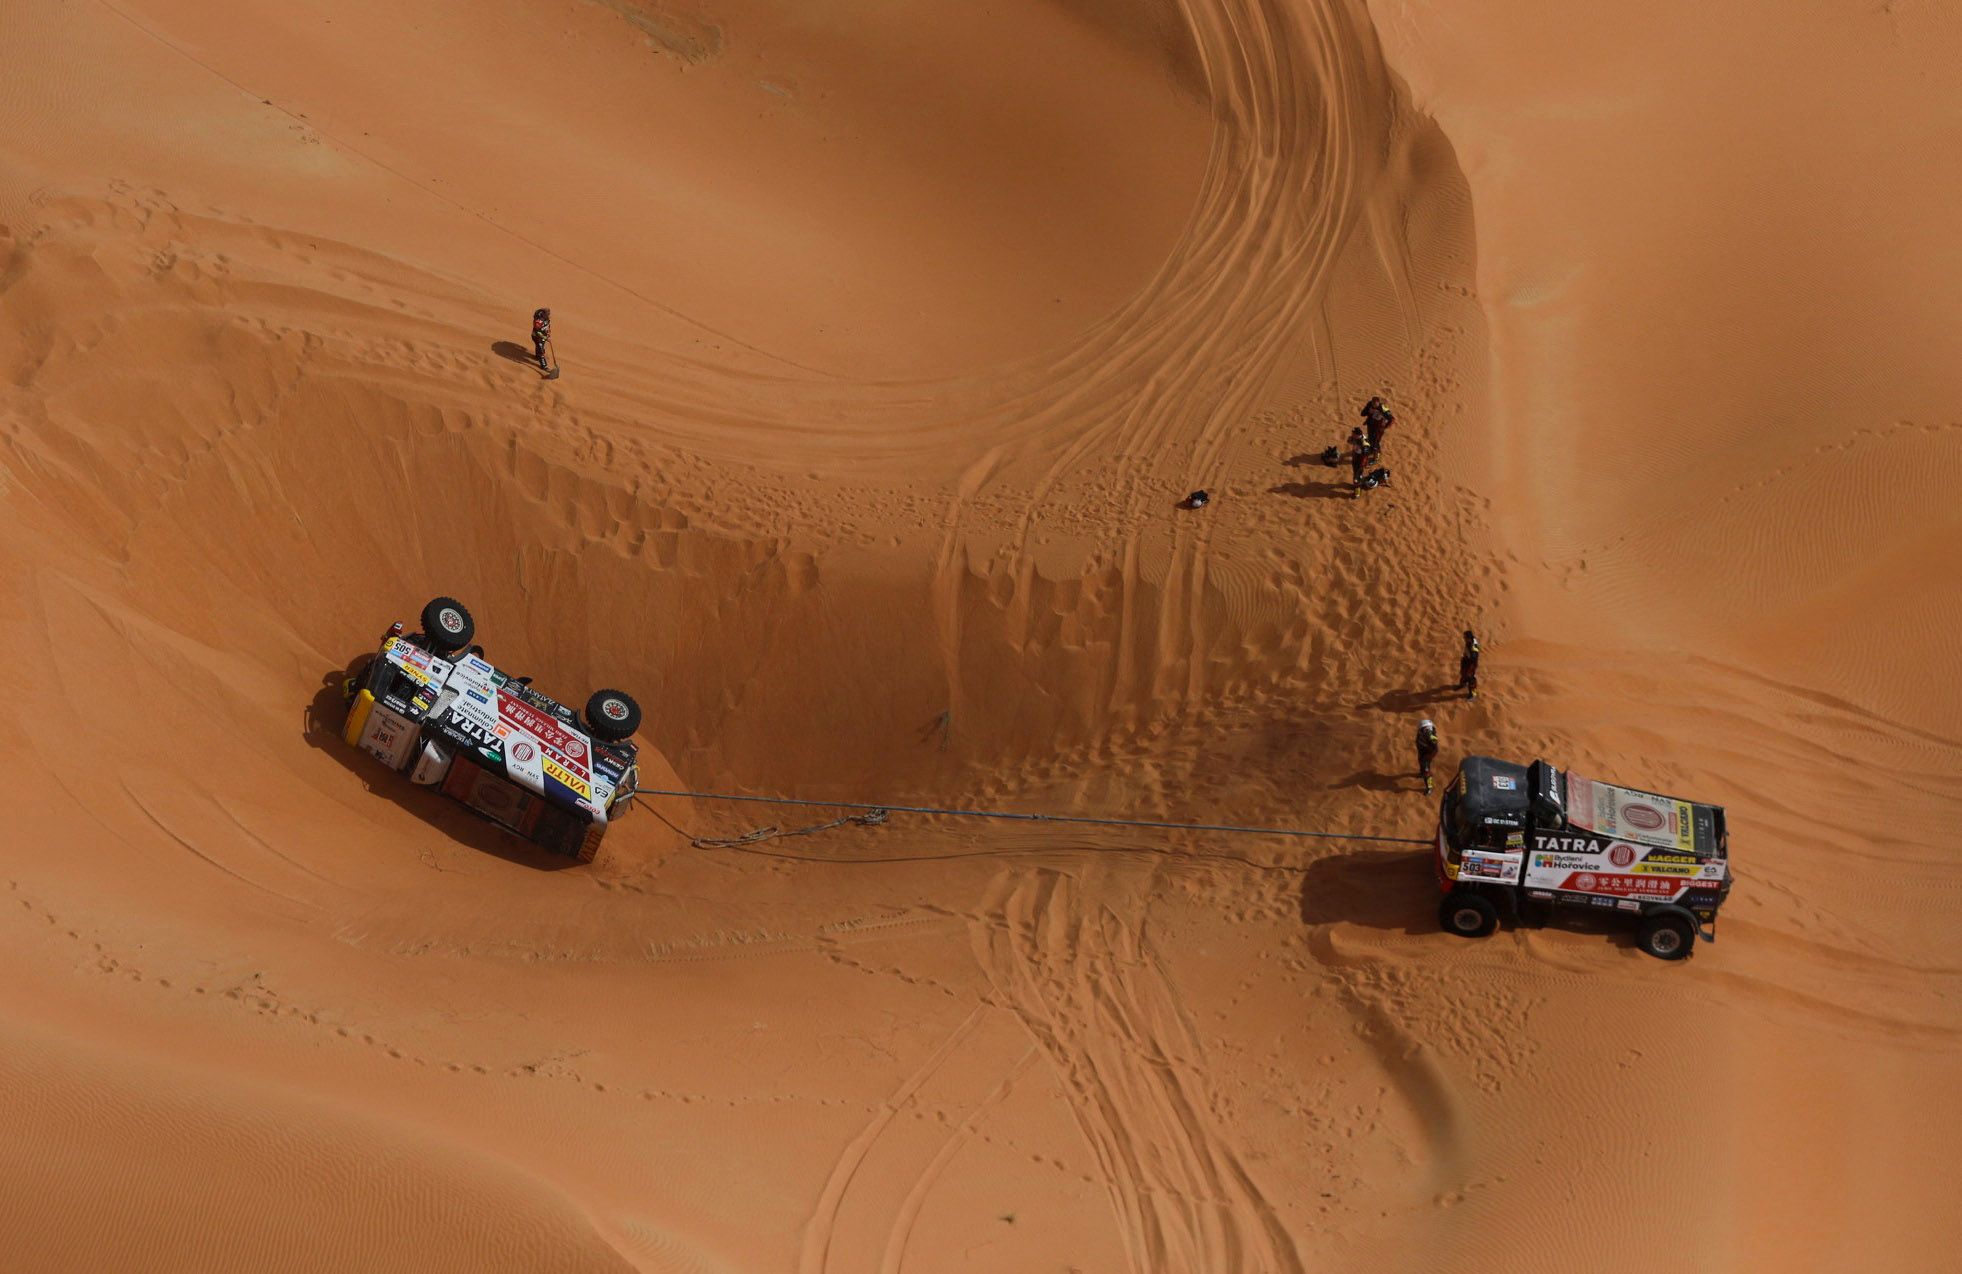 Dakar Rally (163607730).jpg